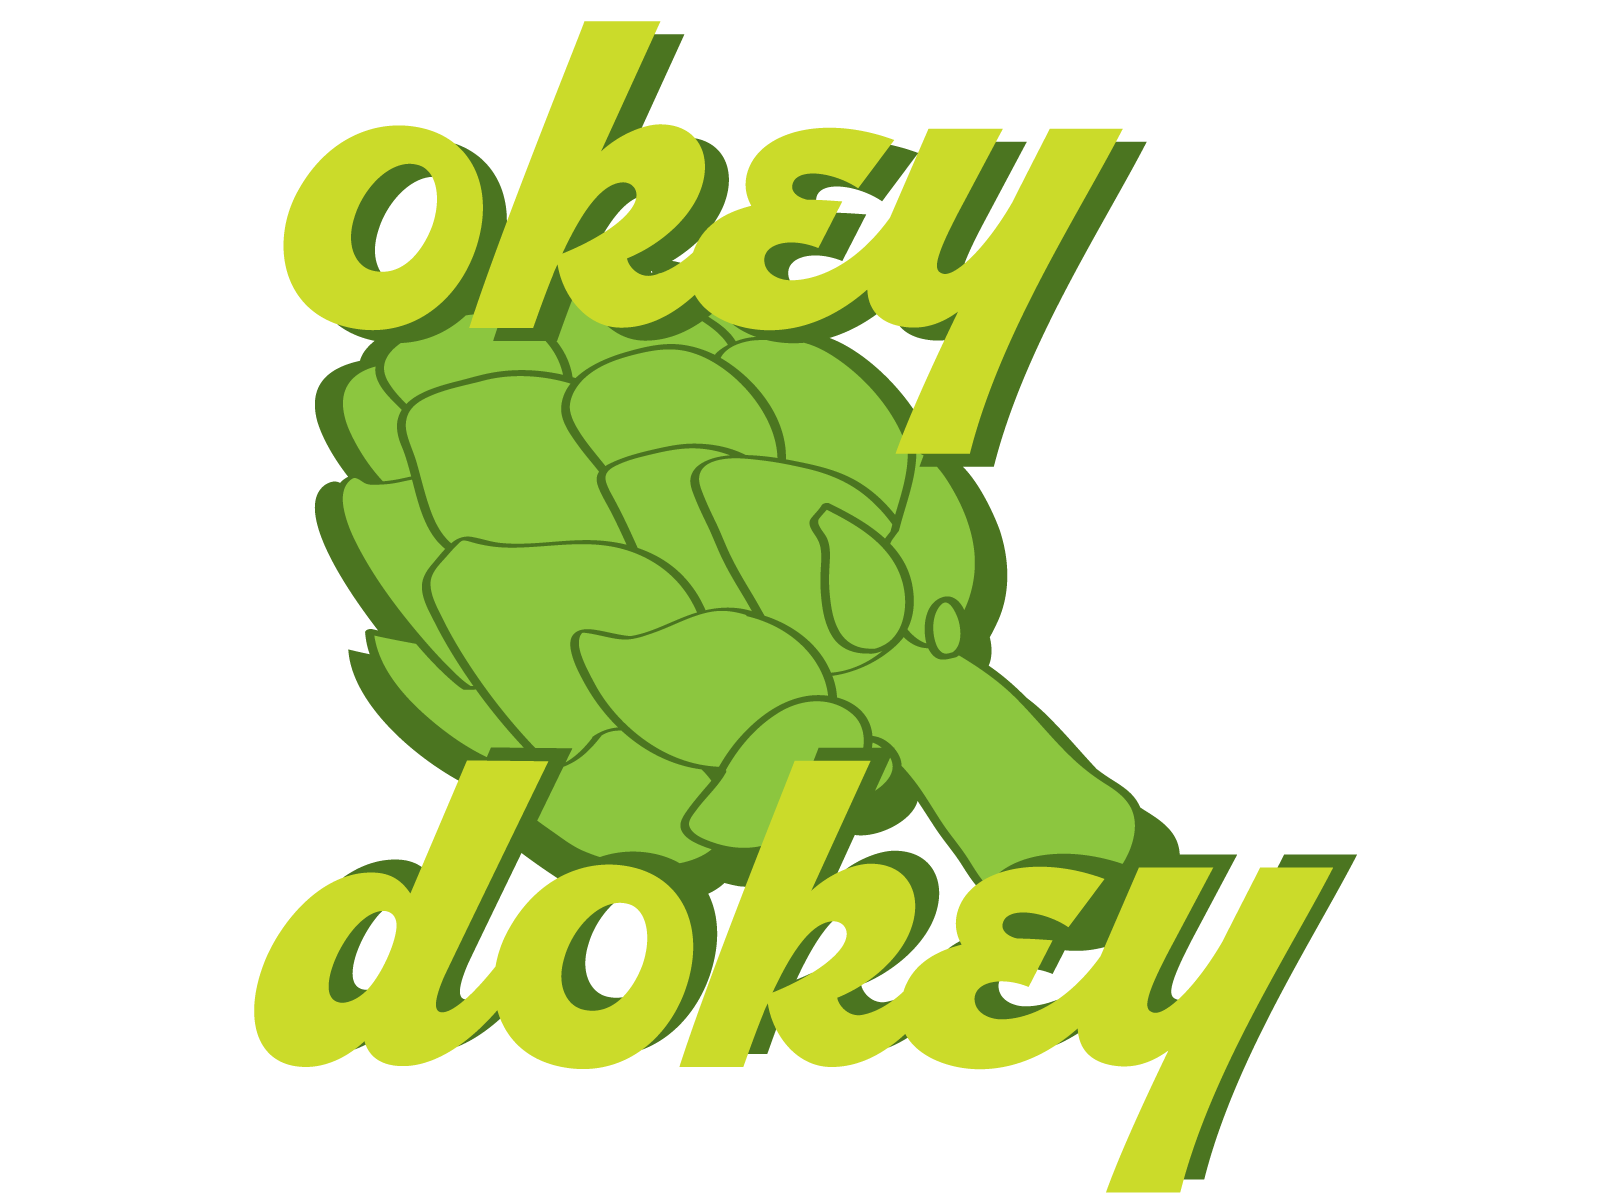 Okey Dokey Artichokey! artichoke green illustration illustrator okey sticker vegetable